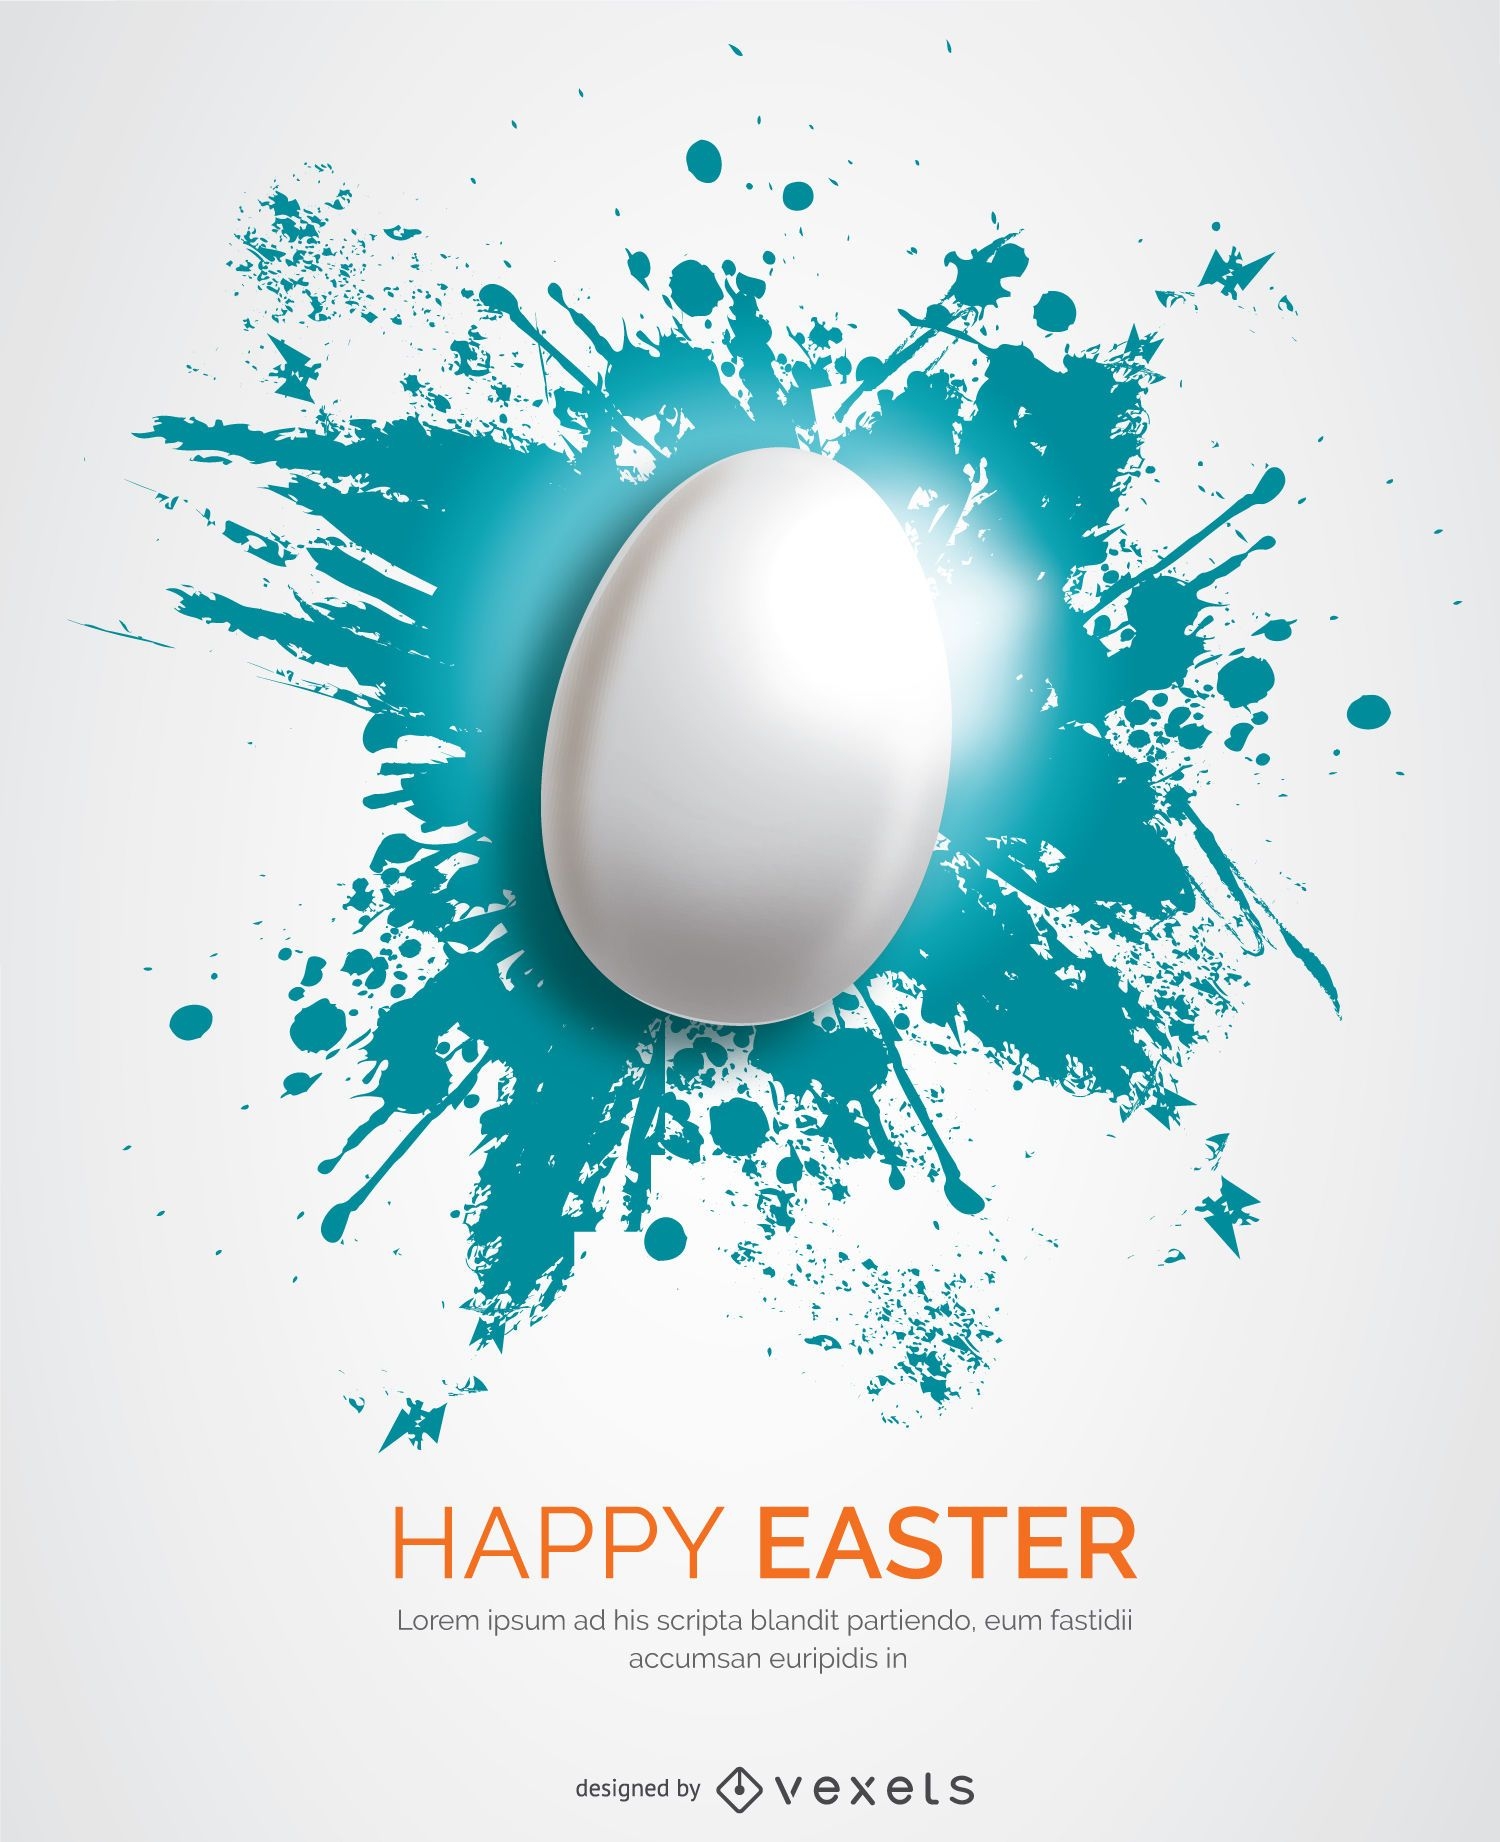 White Easter egg over blue splatter